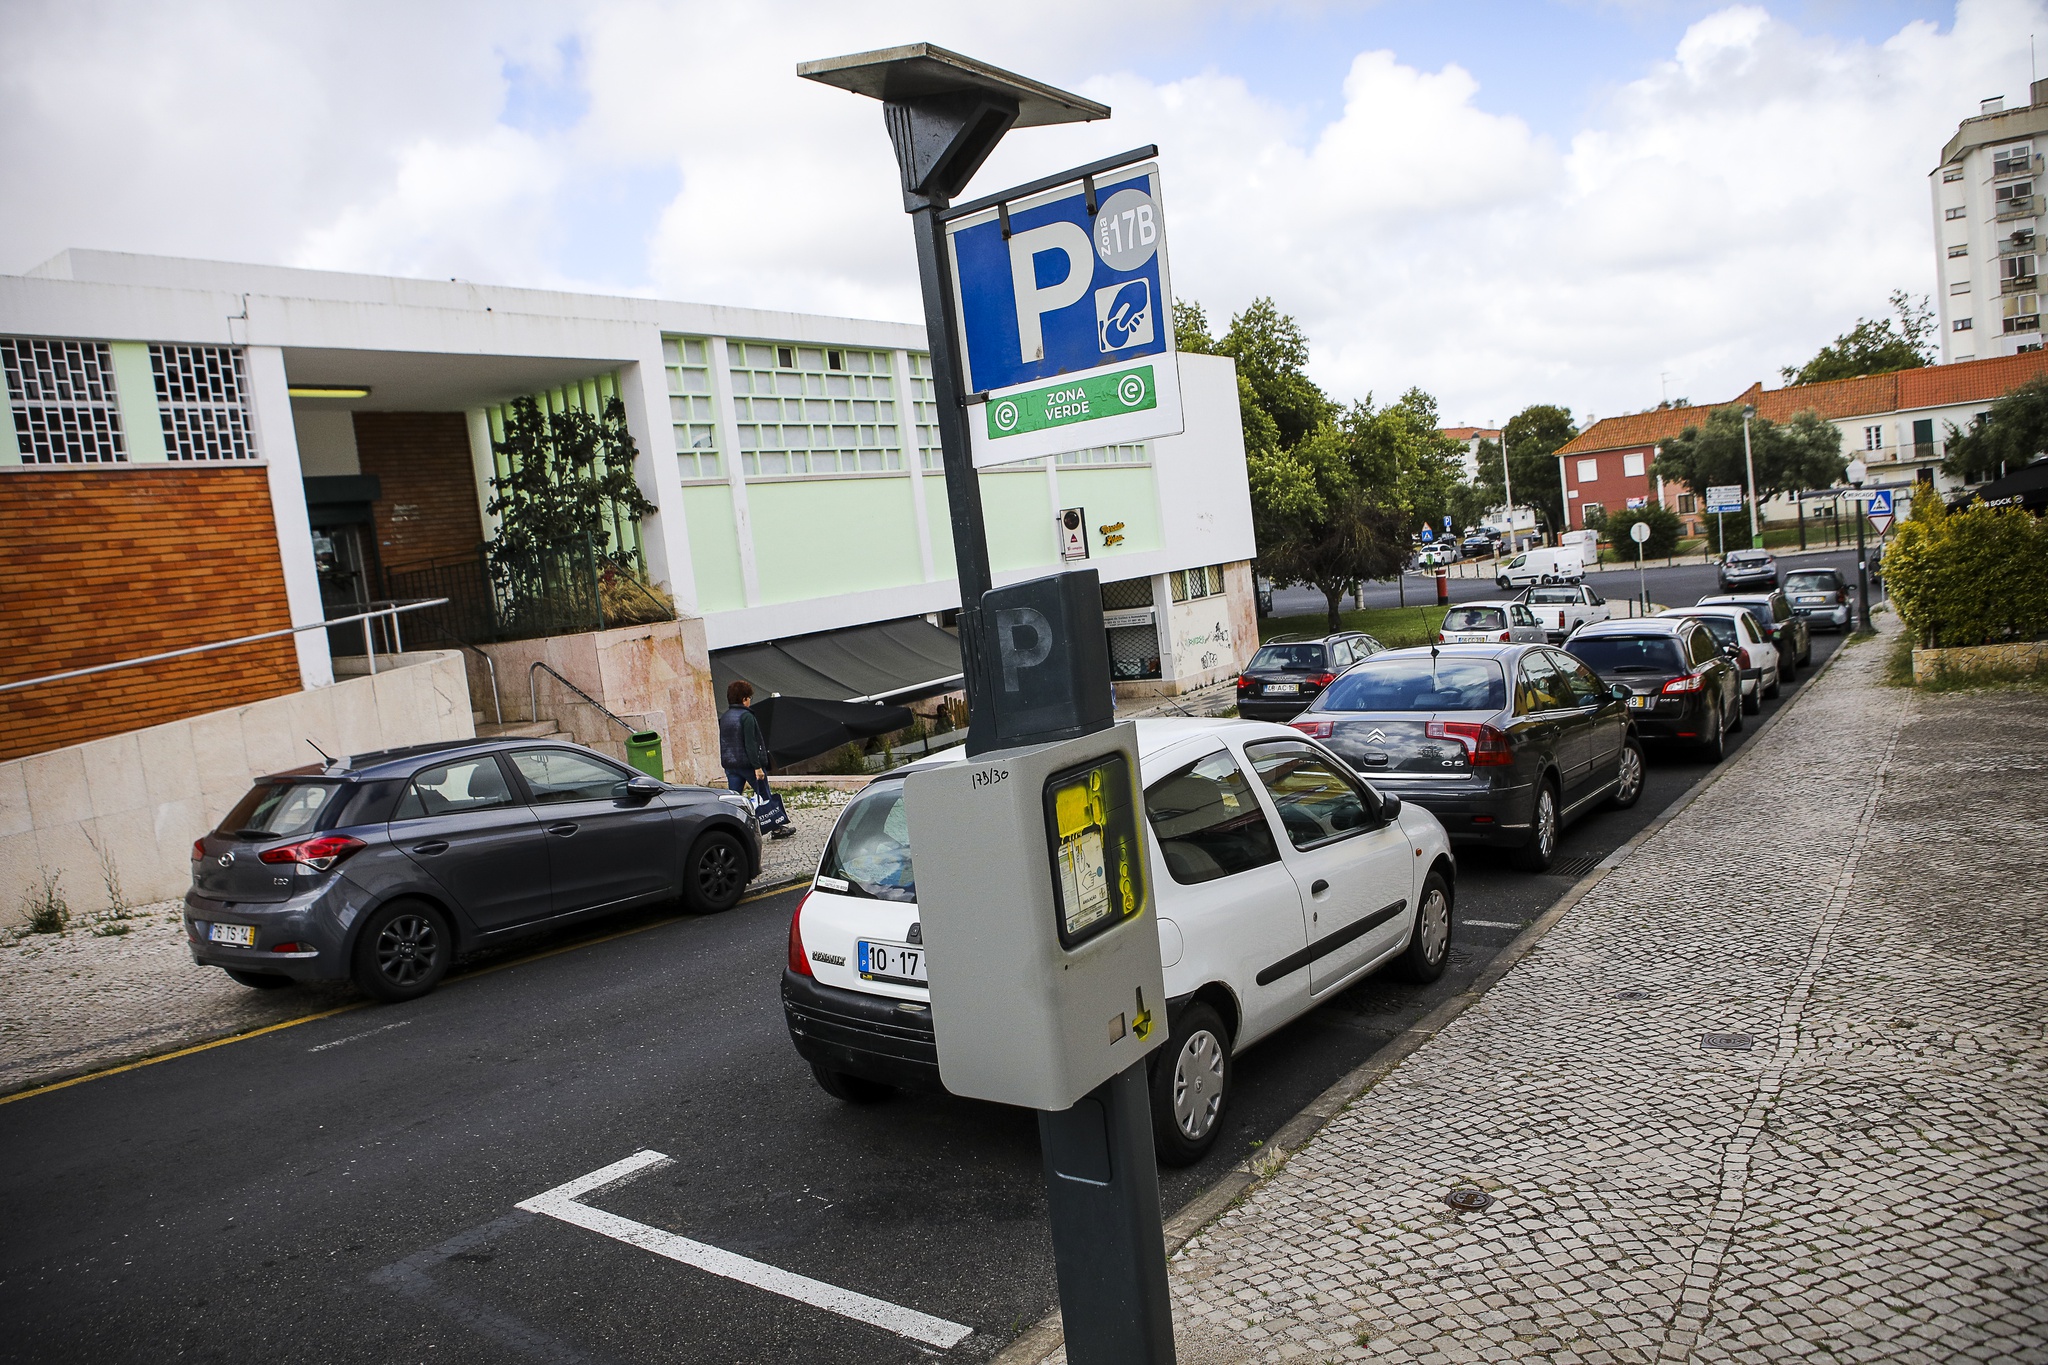 Estacionamento gratuito em Lisboa: onde é possível?